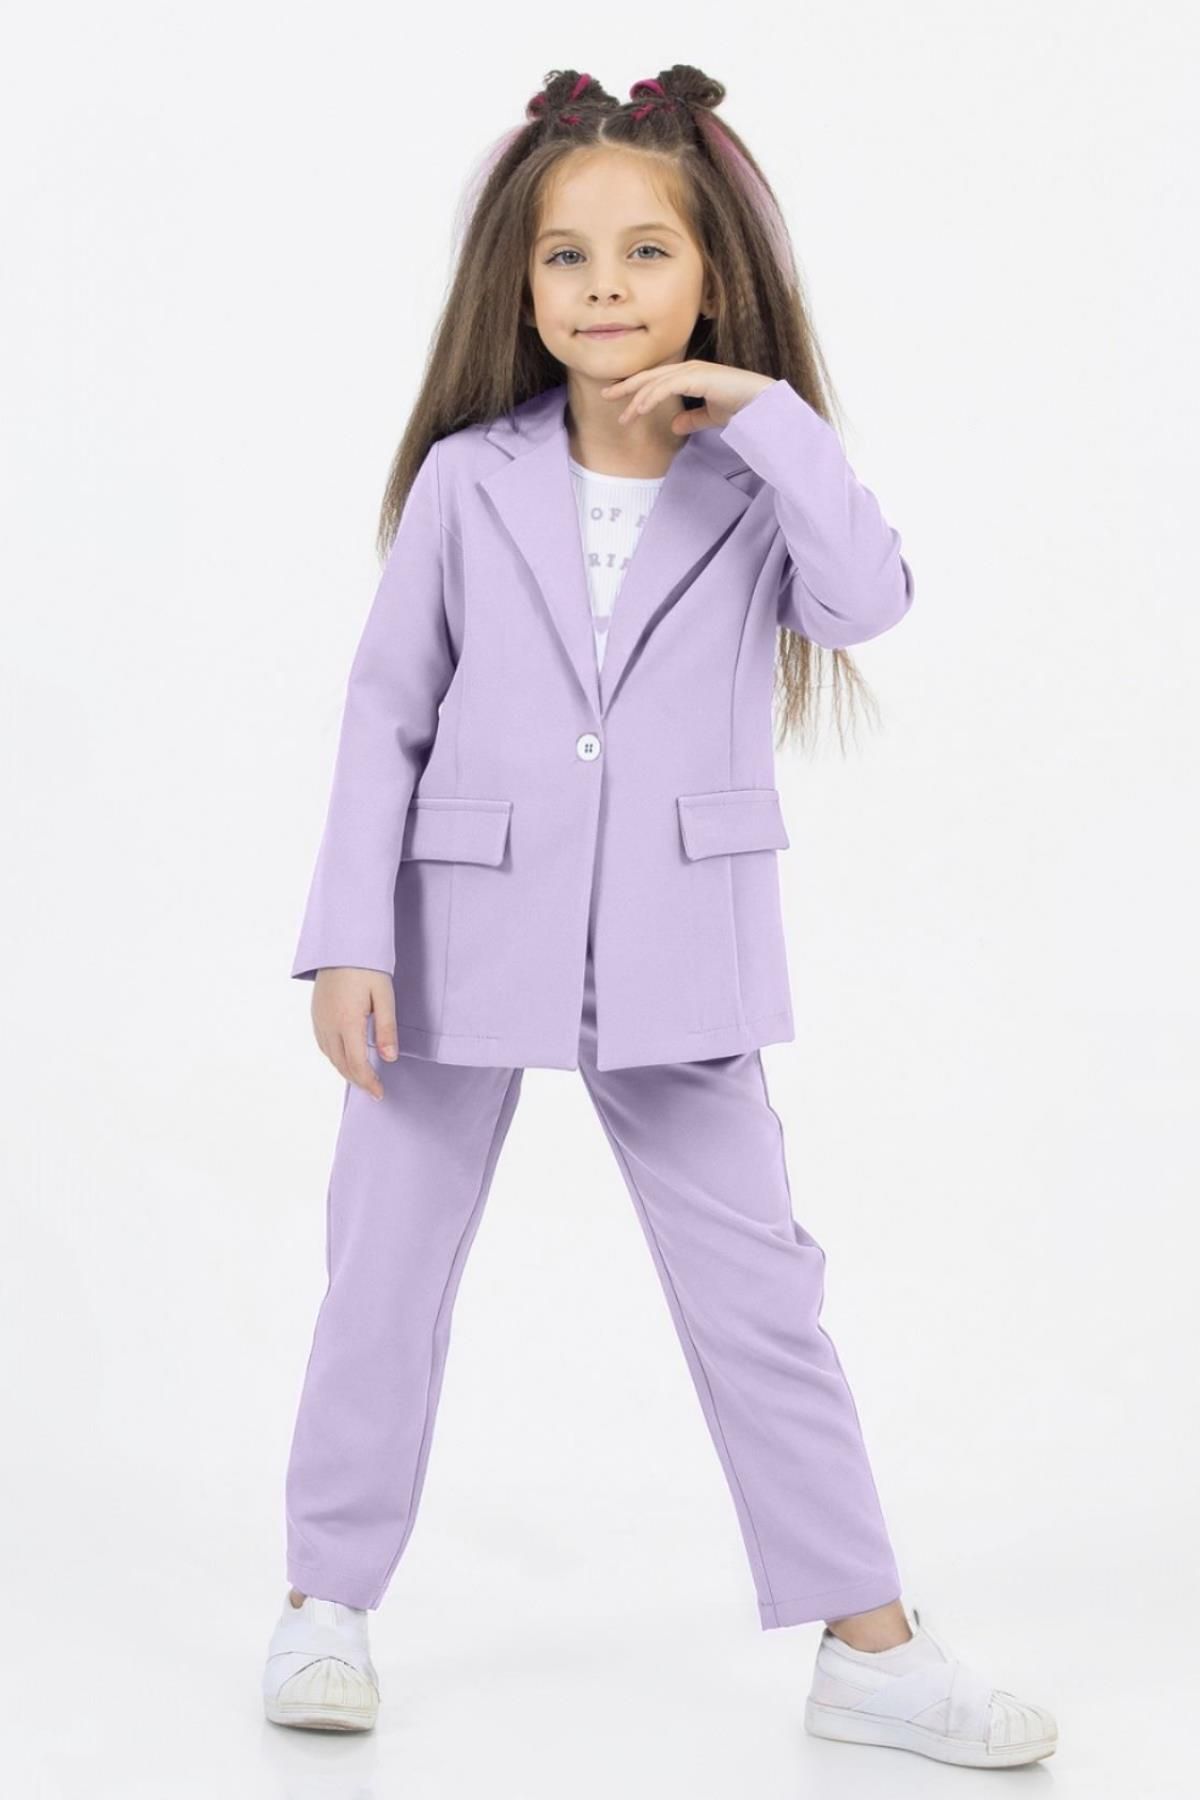 Riccotarz Kız Çocuk Sevimli Baskı Detaylı Fitilli Bluz Kaşkorse Blazer Ceket Lila Alt Üst Takım